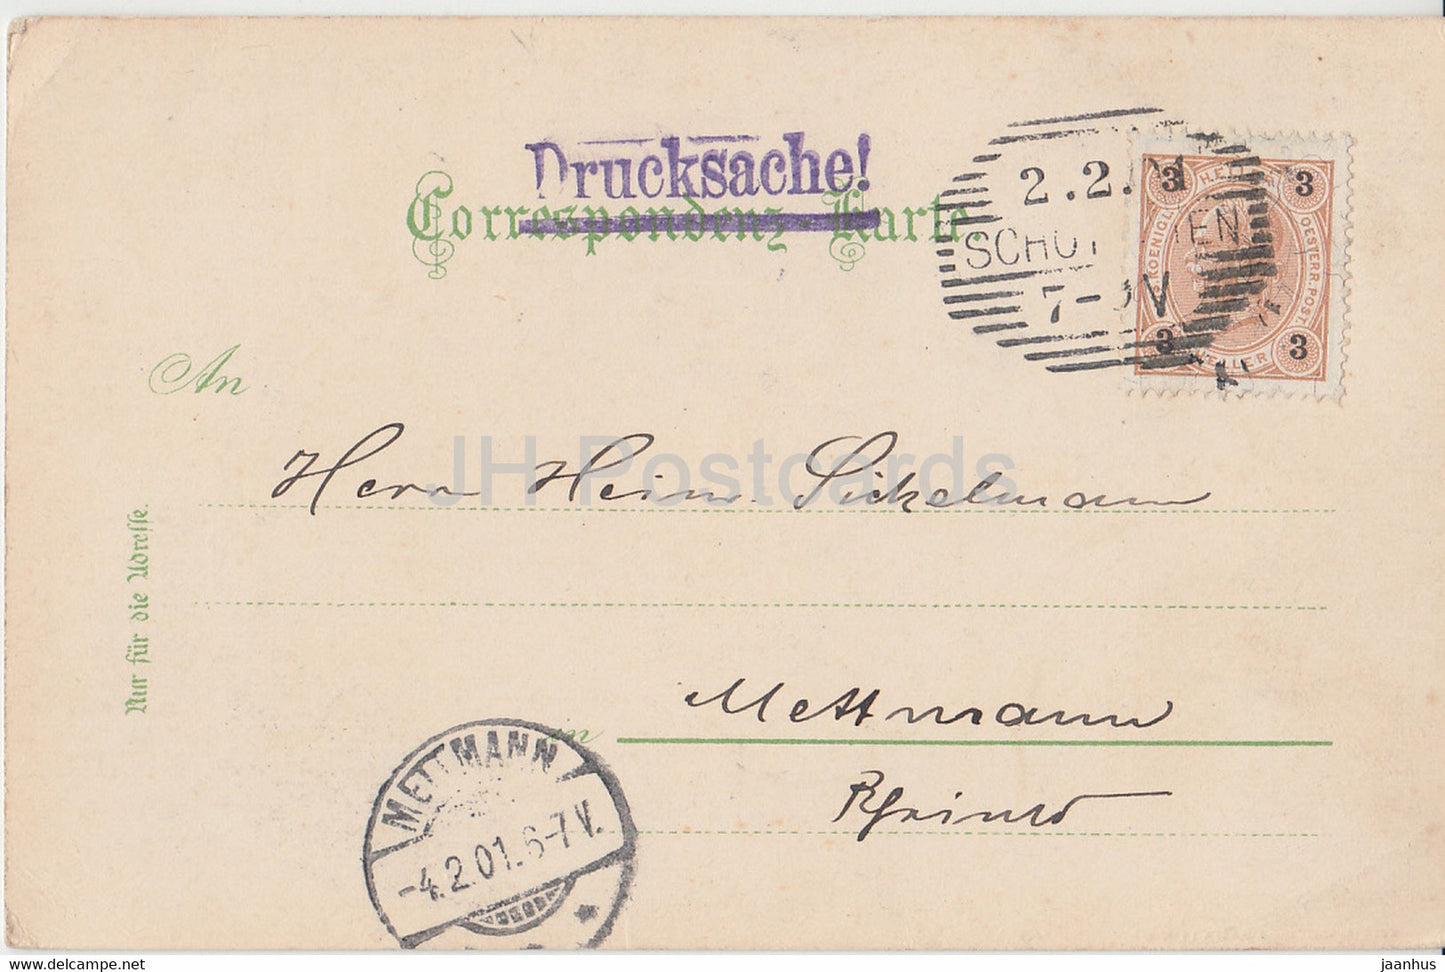 Gruss aus dem Semmering Gebiet - Der Jägergraben - Drucksache - alte Postkarte - 1901 - Österreich - gebraucht